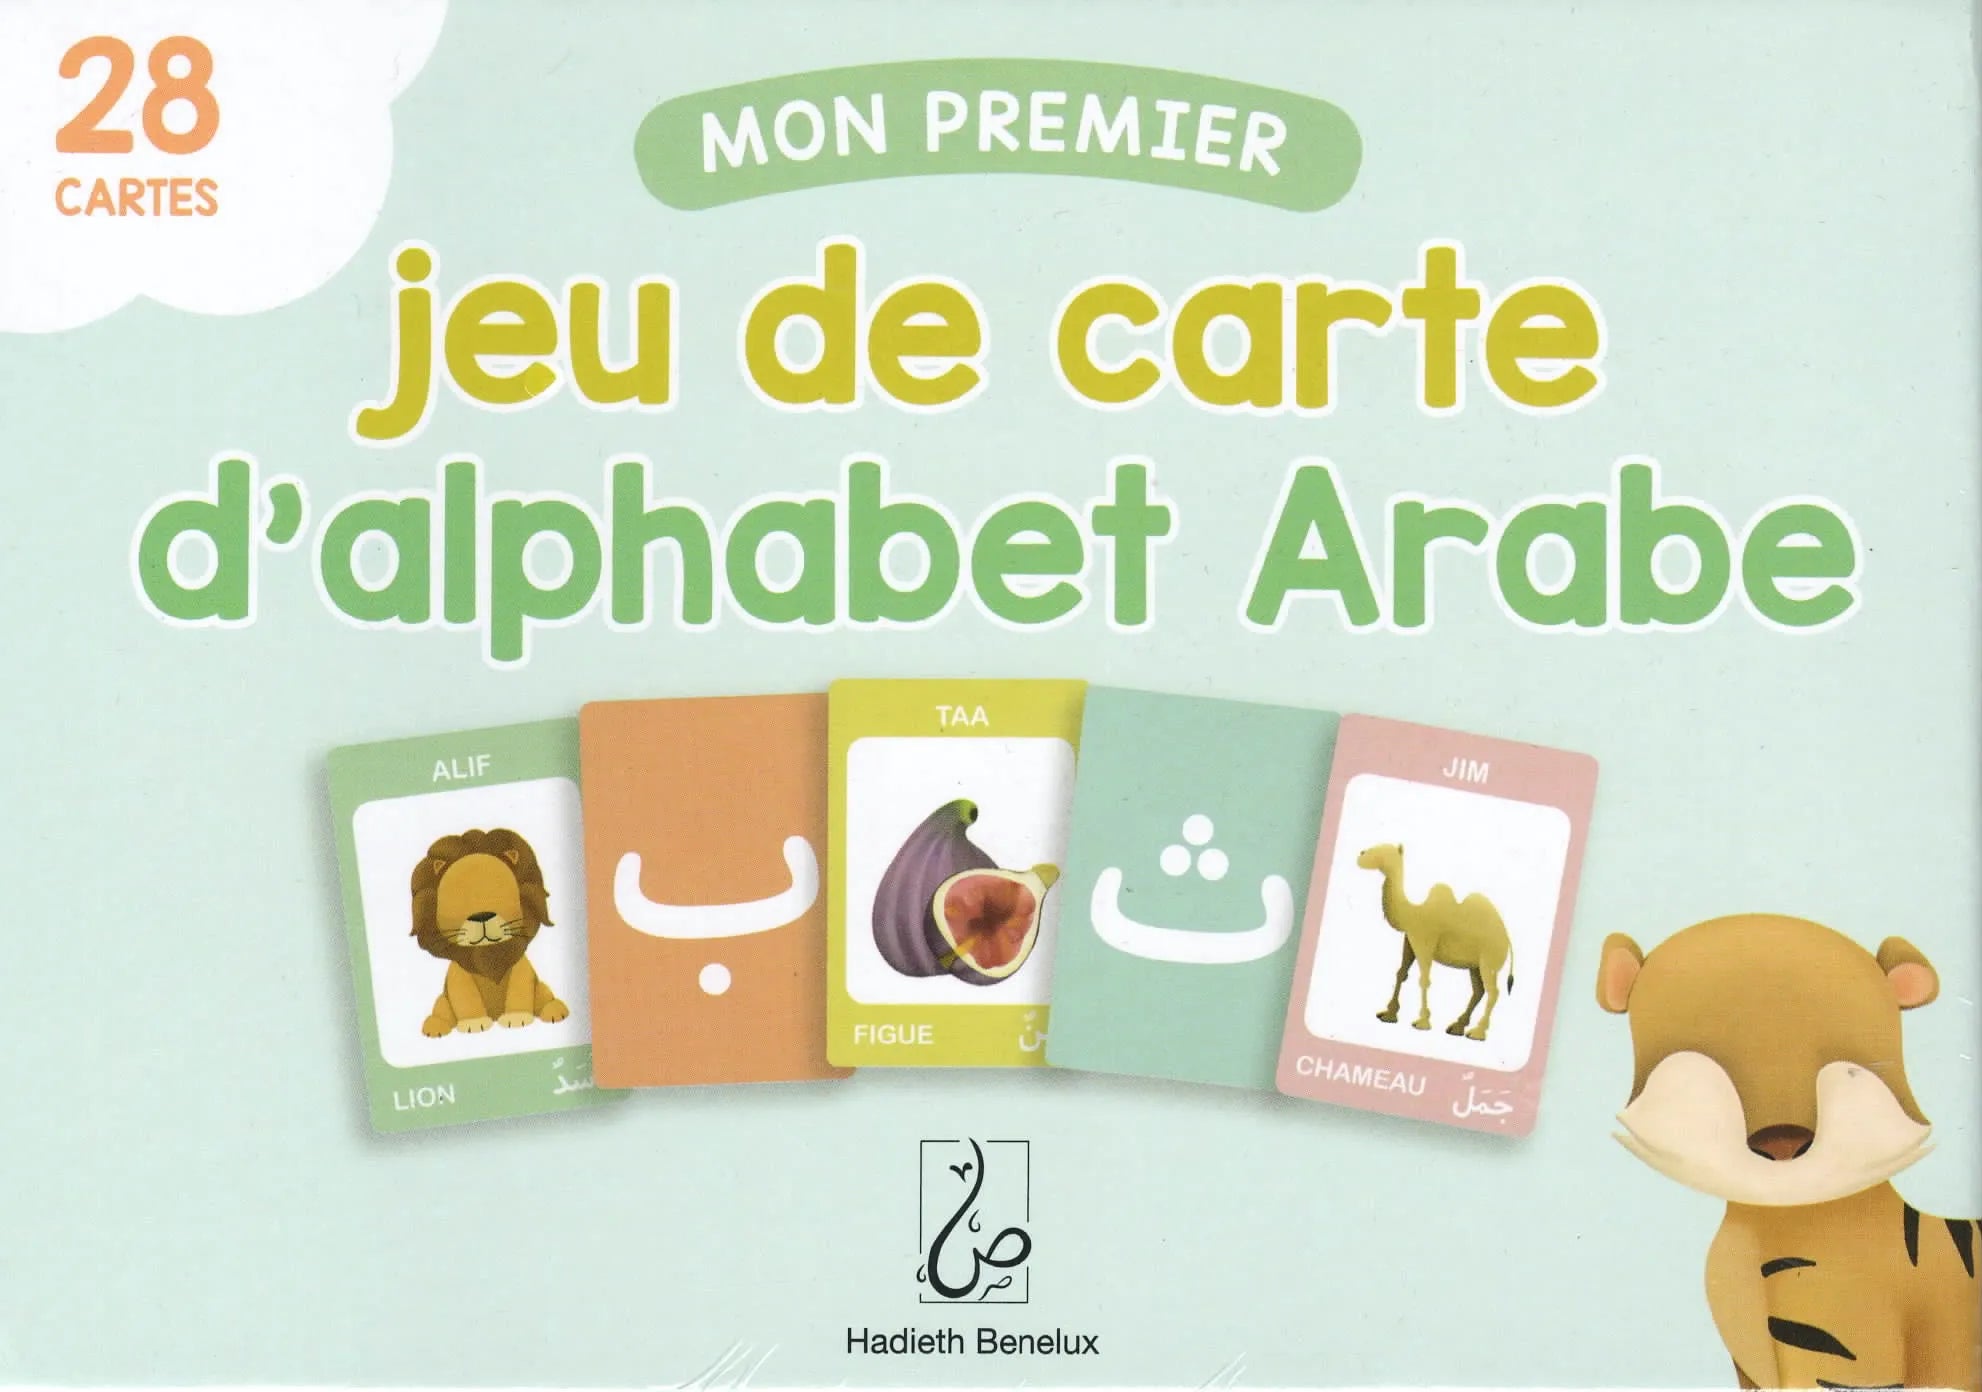 Mon premier jeu de carte de l’alphabet Arabe (28 cartes)